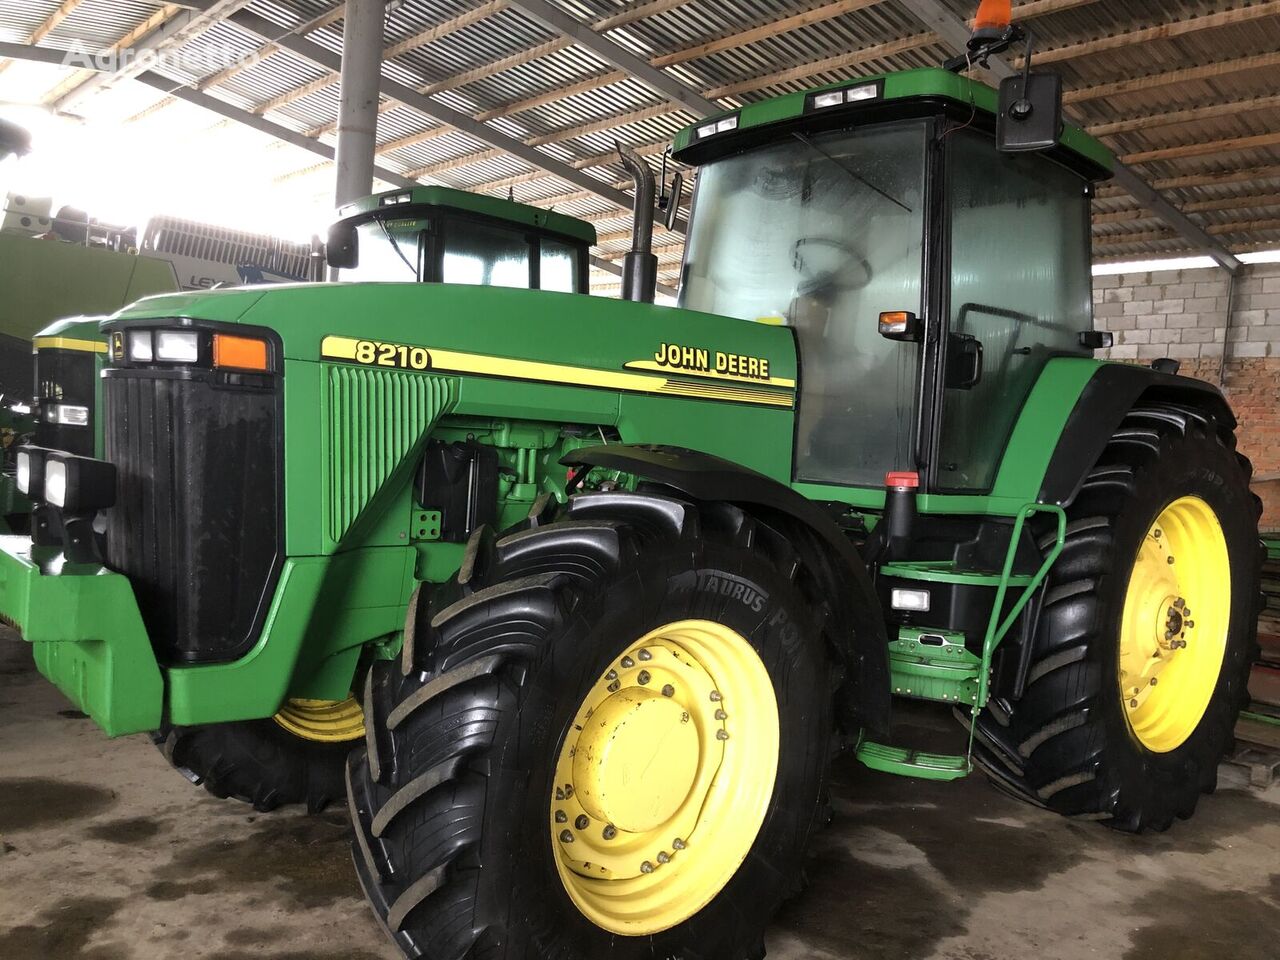 John Deere 8210 wheel tractor